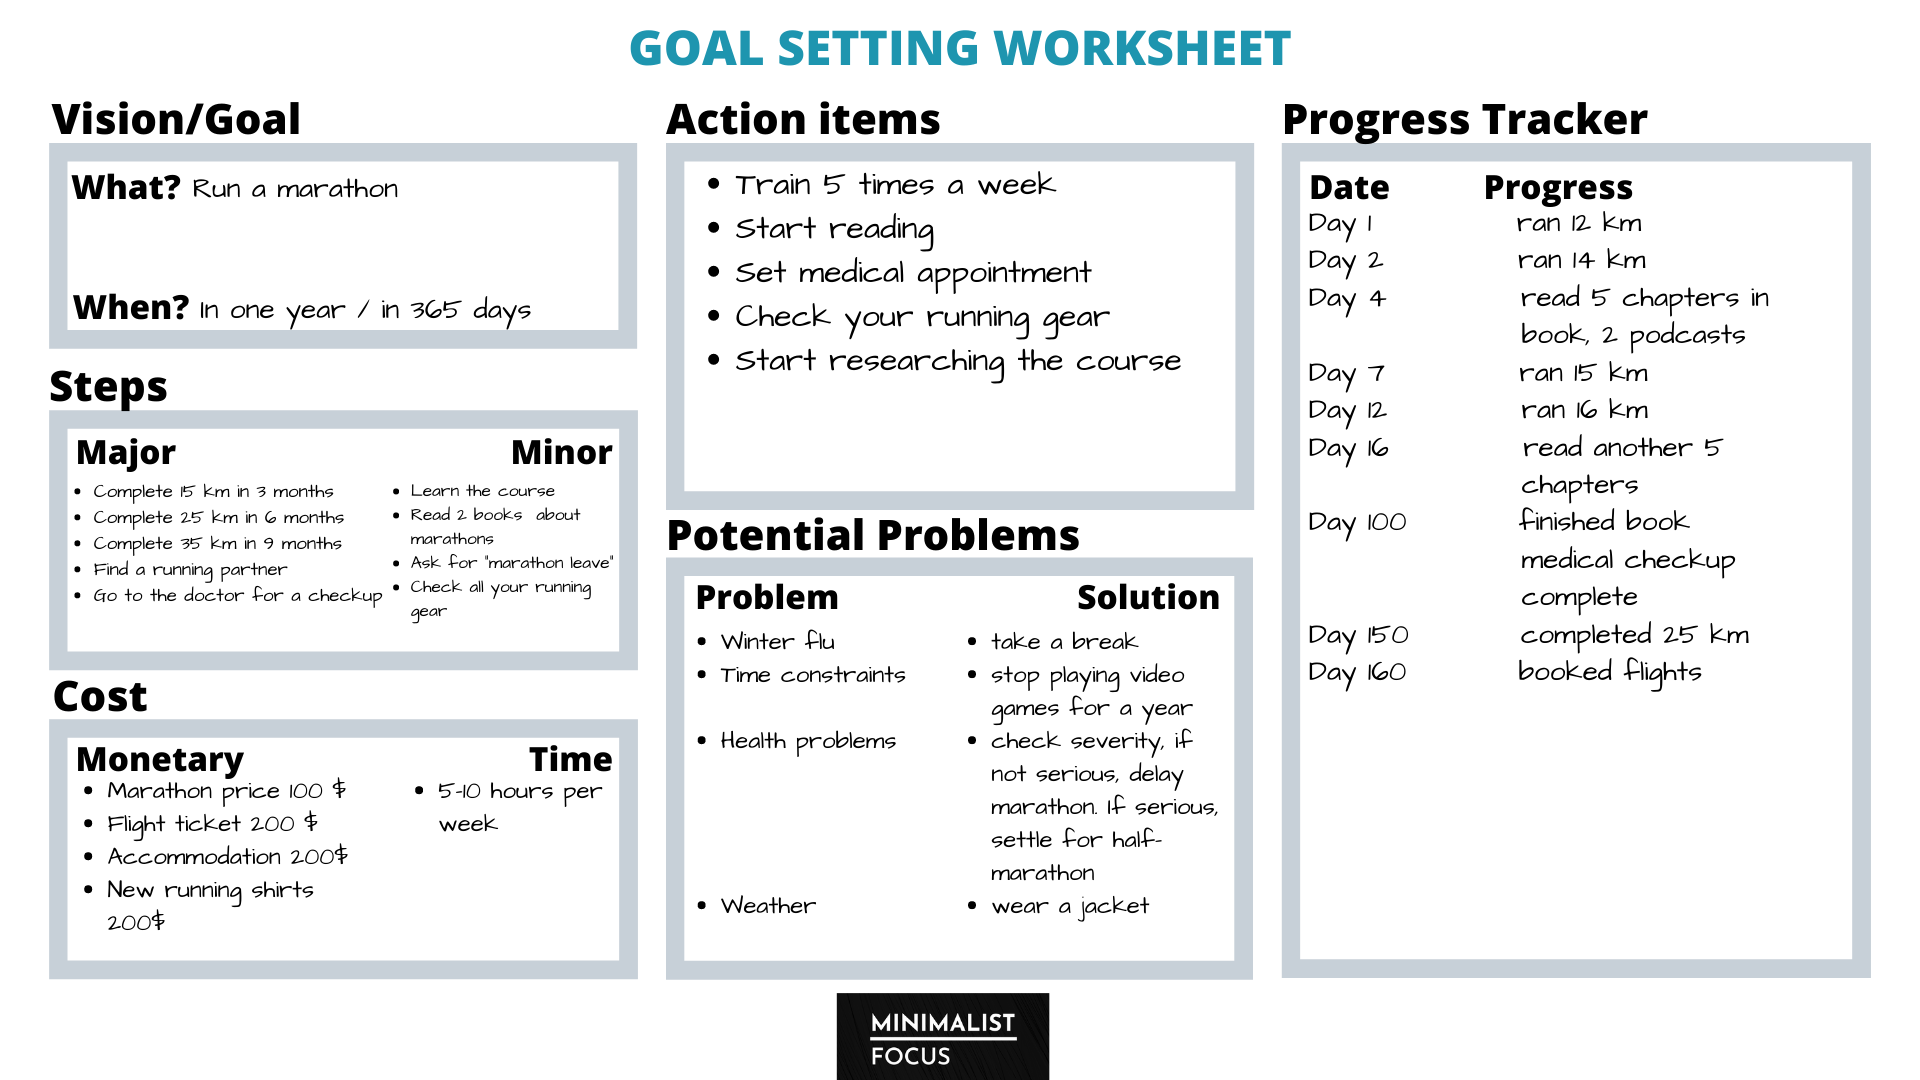 Goal setting worksheet - plan to run marathon